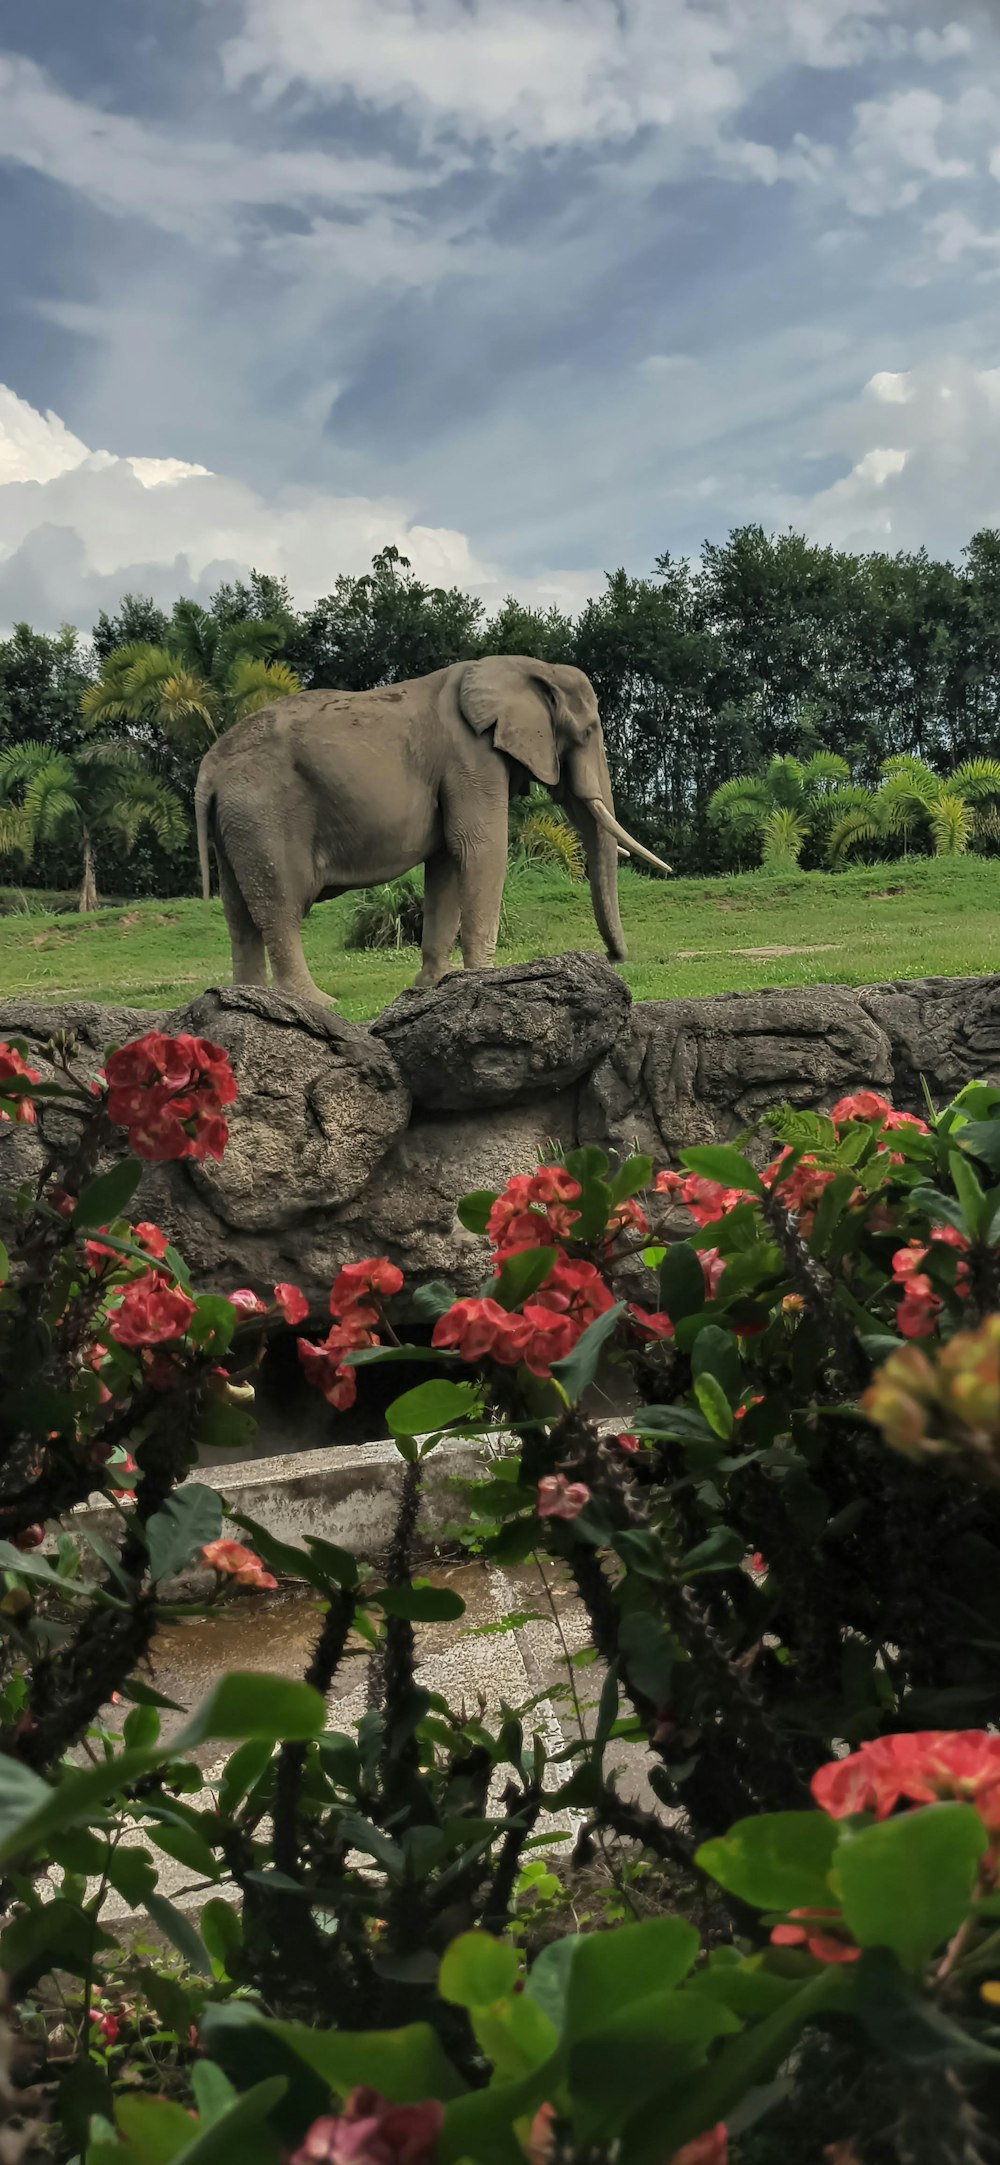 무성한 녹색 들판 위에 서있는 큰 코끼리